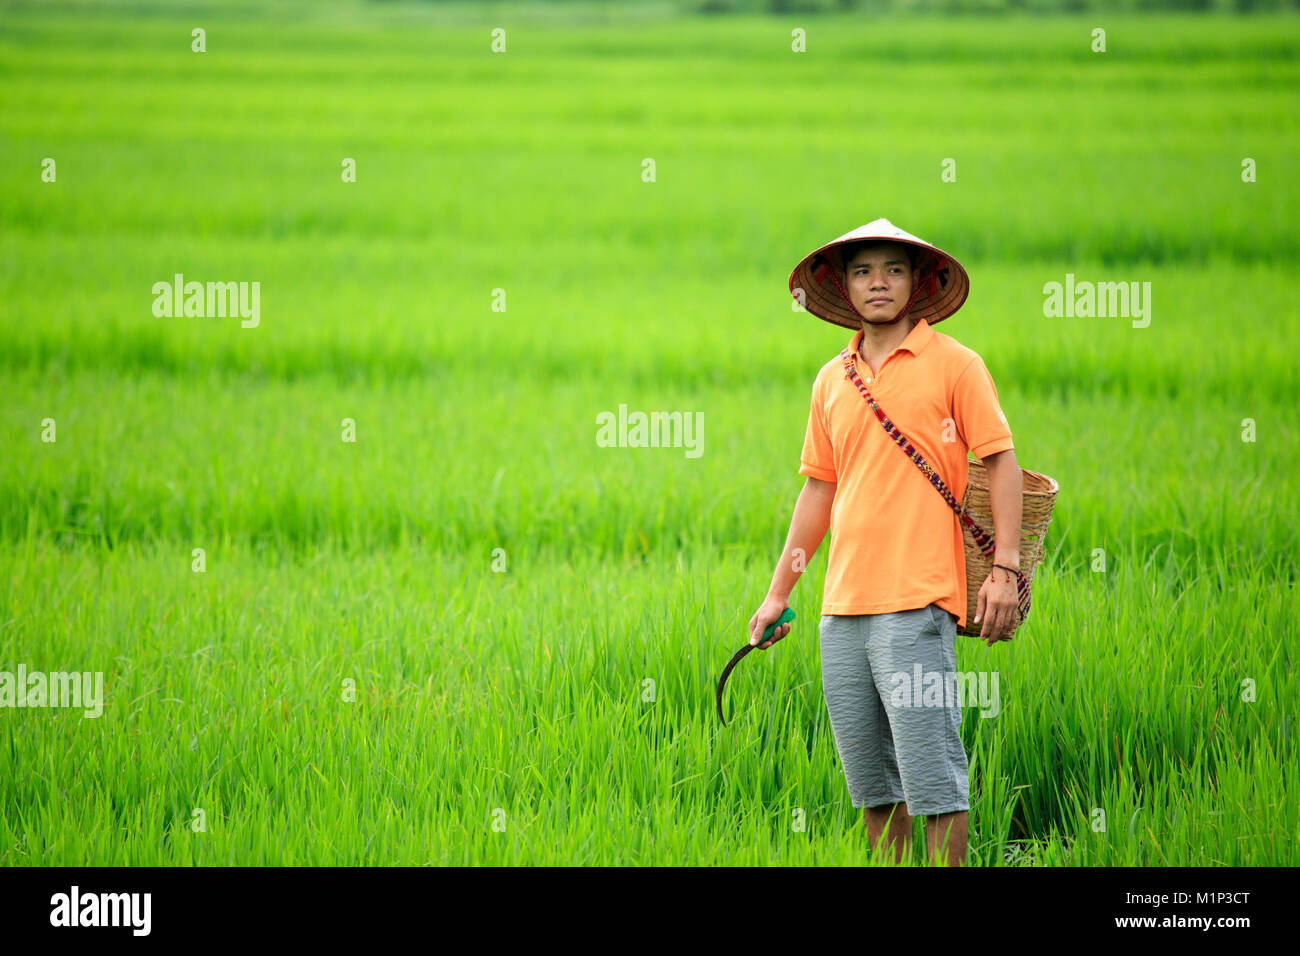 Farmer portant un chapeau conique dans les rizières, Mai Chau, Hoa Binh, au Vietnam, en Indochine, en Asie du Sud-Est, l'Asie Banque D'Images